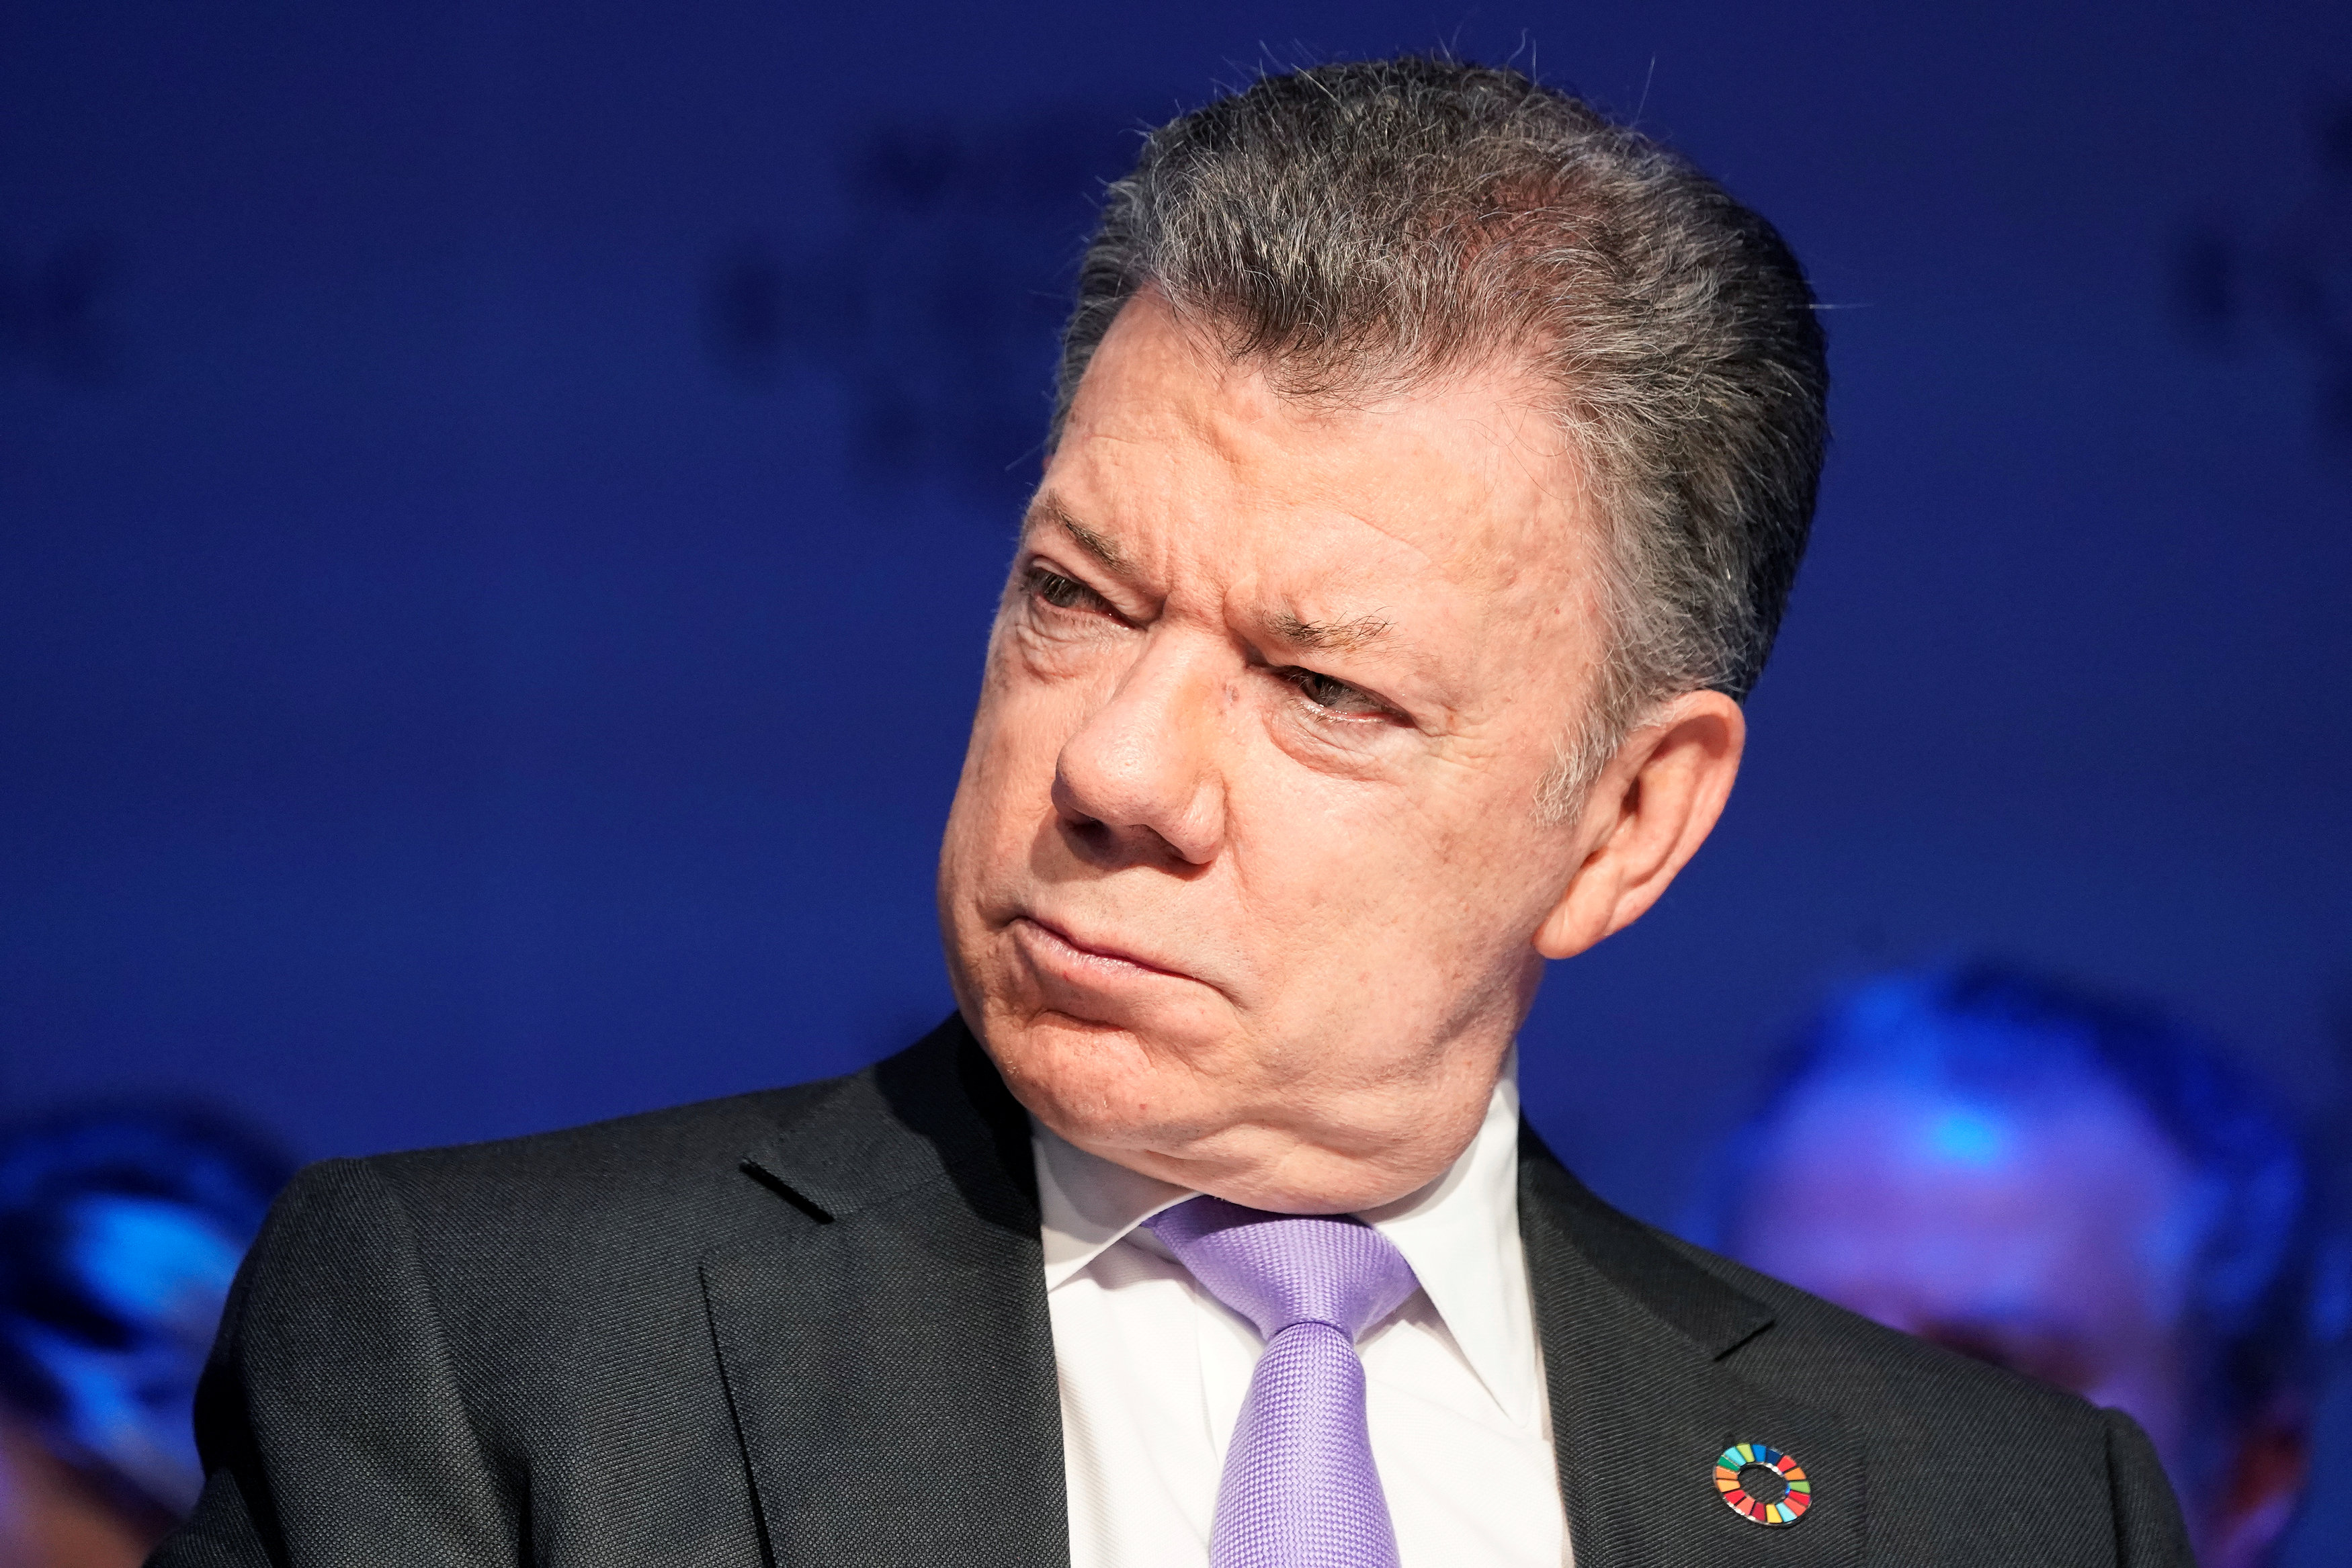 Santos niega riesgo de fraude electoral en Colombia denunciado por Petro